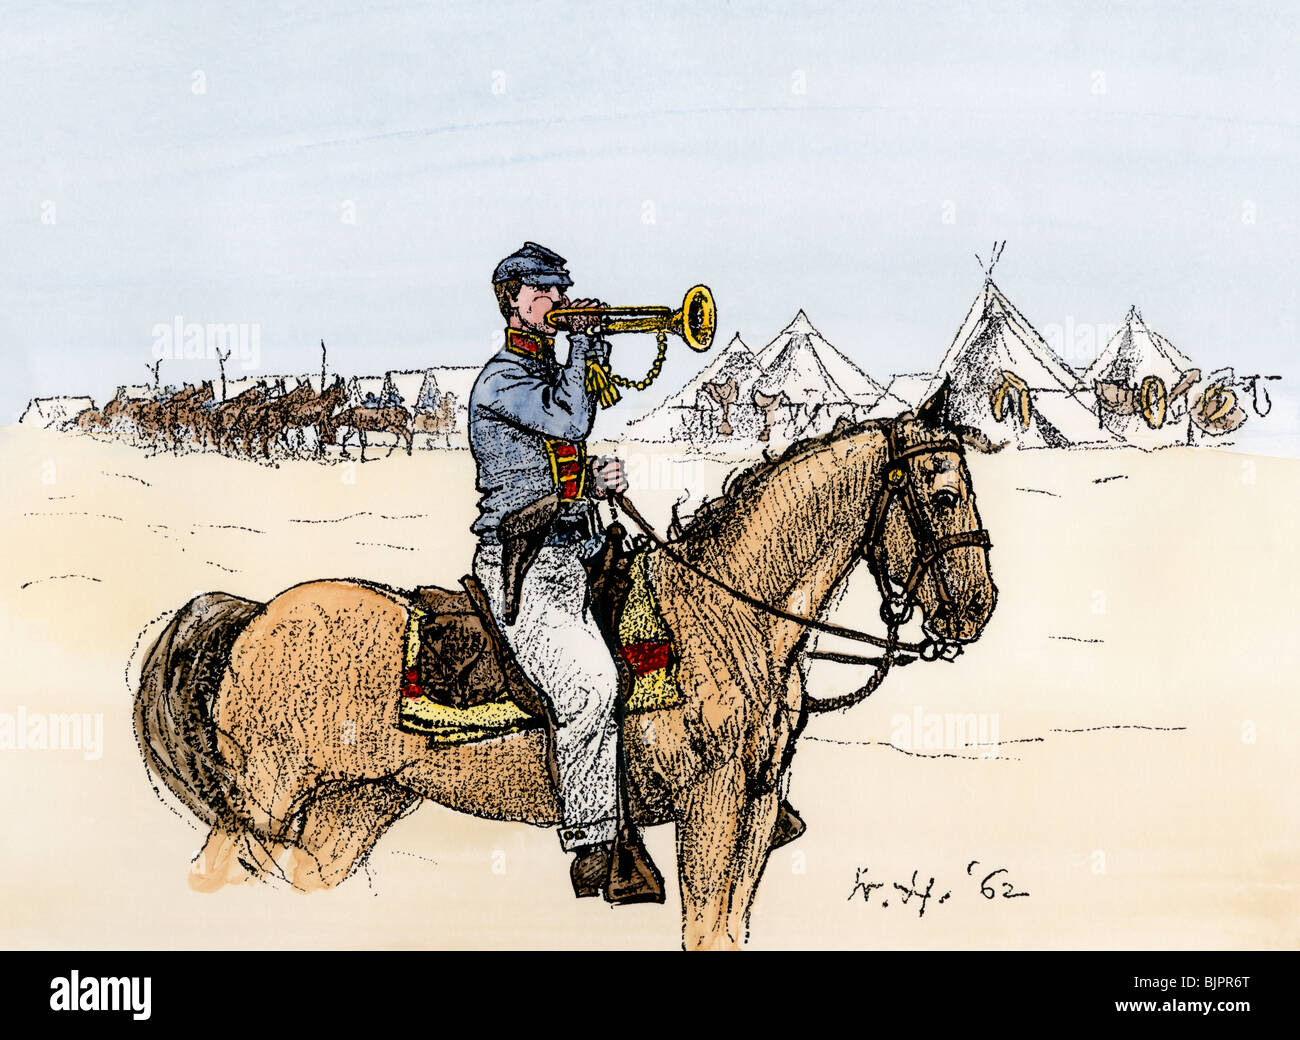 Clairon annonçant un appel d'eau dans un camp de cavalerie de l'Union. À la main, gravure sur bois, d'une illustration Winslow Homer Banque D'Images